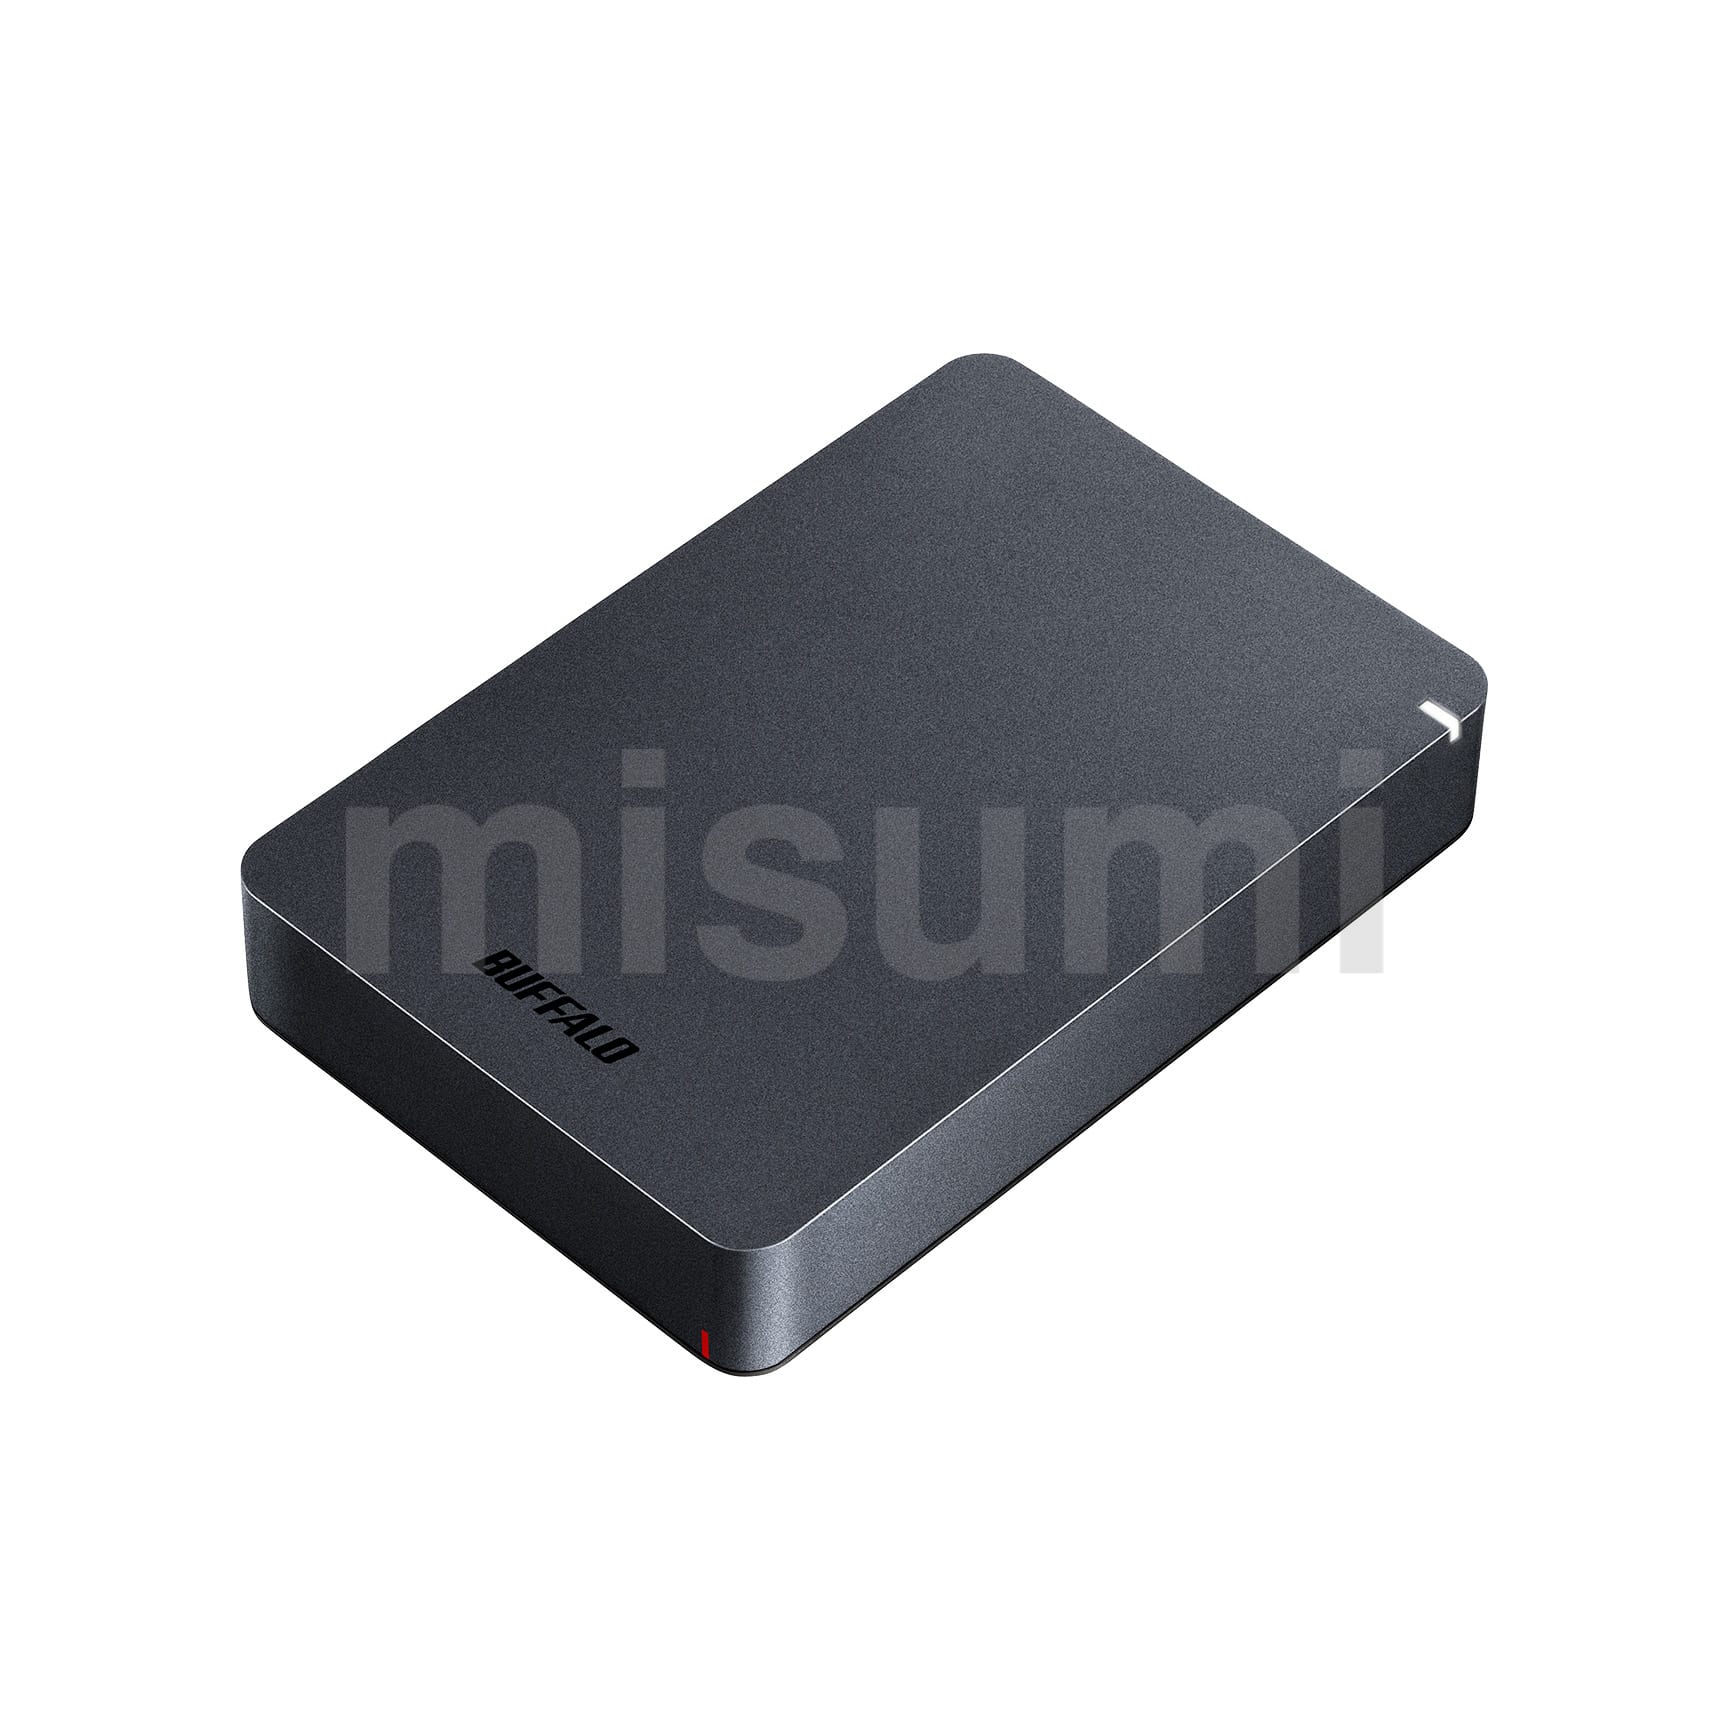 HDT-AV6.0TU3/V | 外付けHDD USB3.0用 東芝テレビ〈レグザ〉・タイムシフトマシン機能対応 BFL  ｶﾞｲﾌﾞｽﾄﾚｰｼﾞﾃﾞﾊﾞｲｽ | バッファロー | MISUMI(ミスミ)